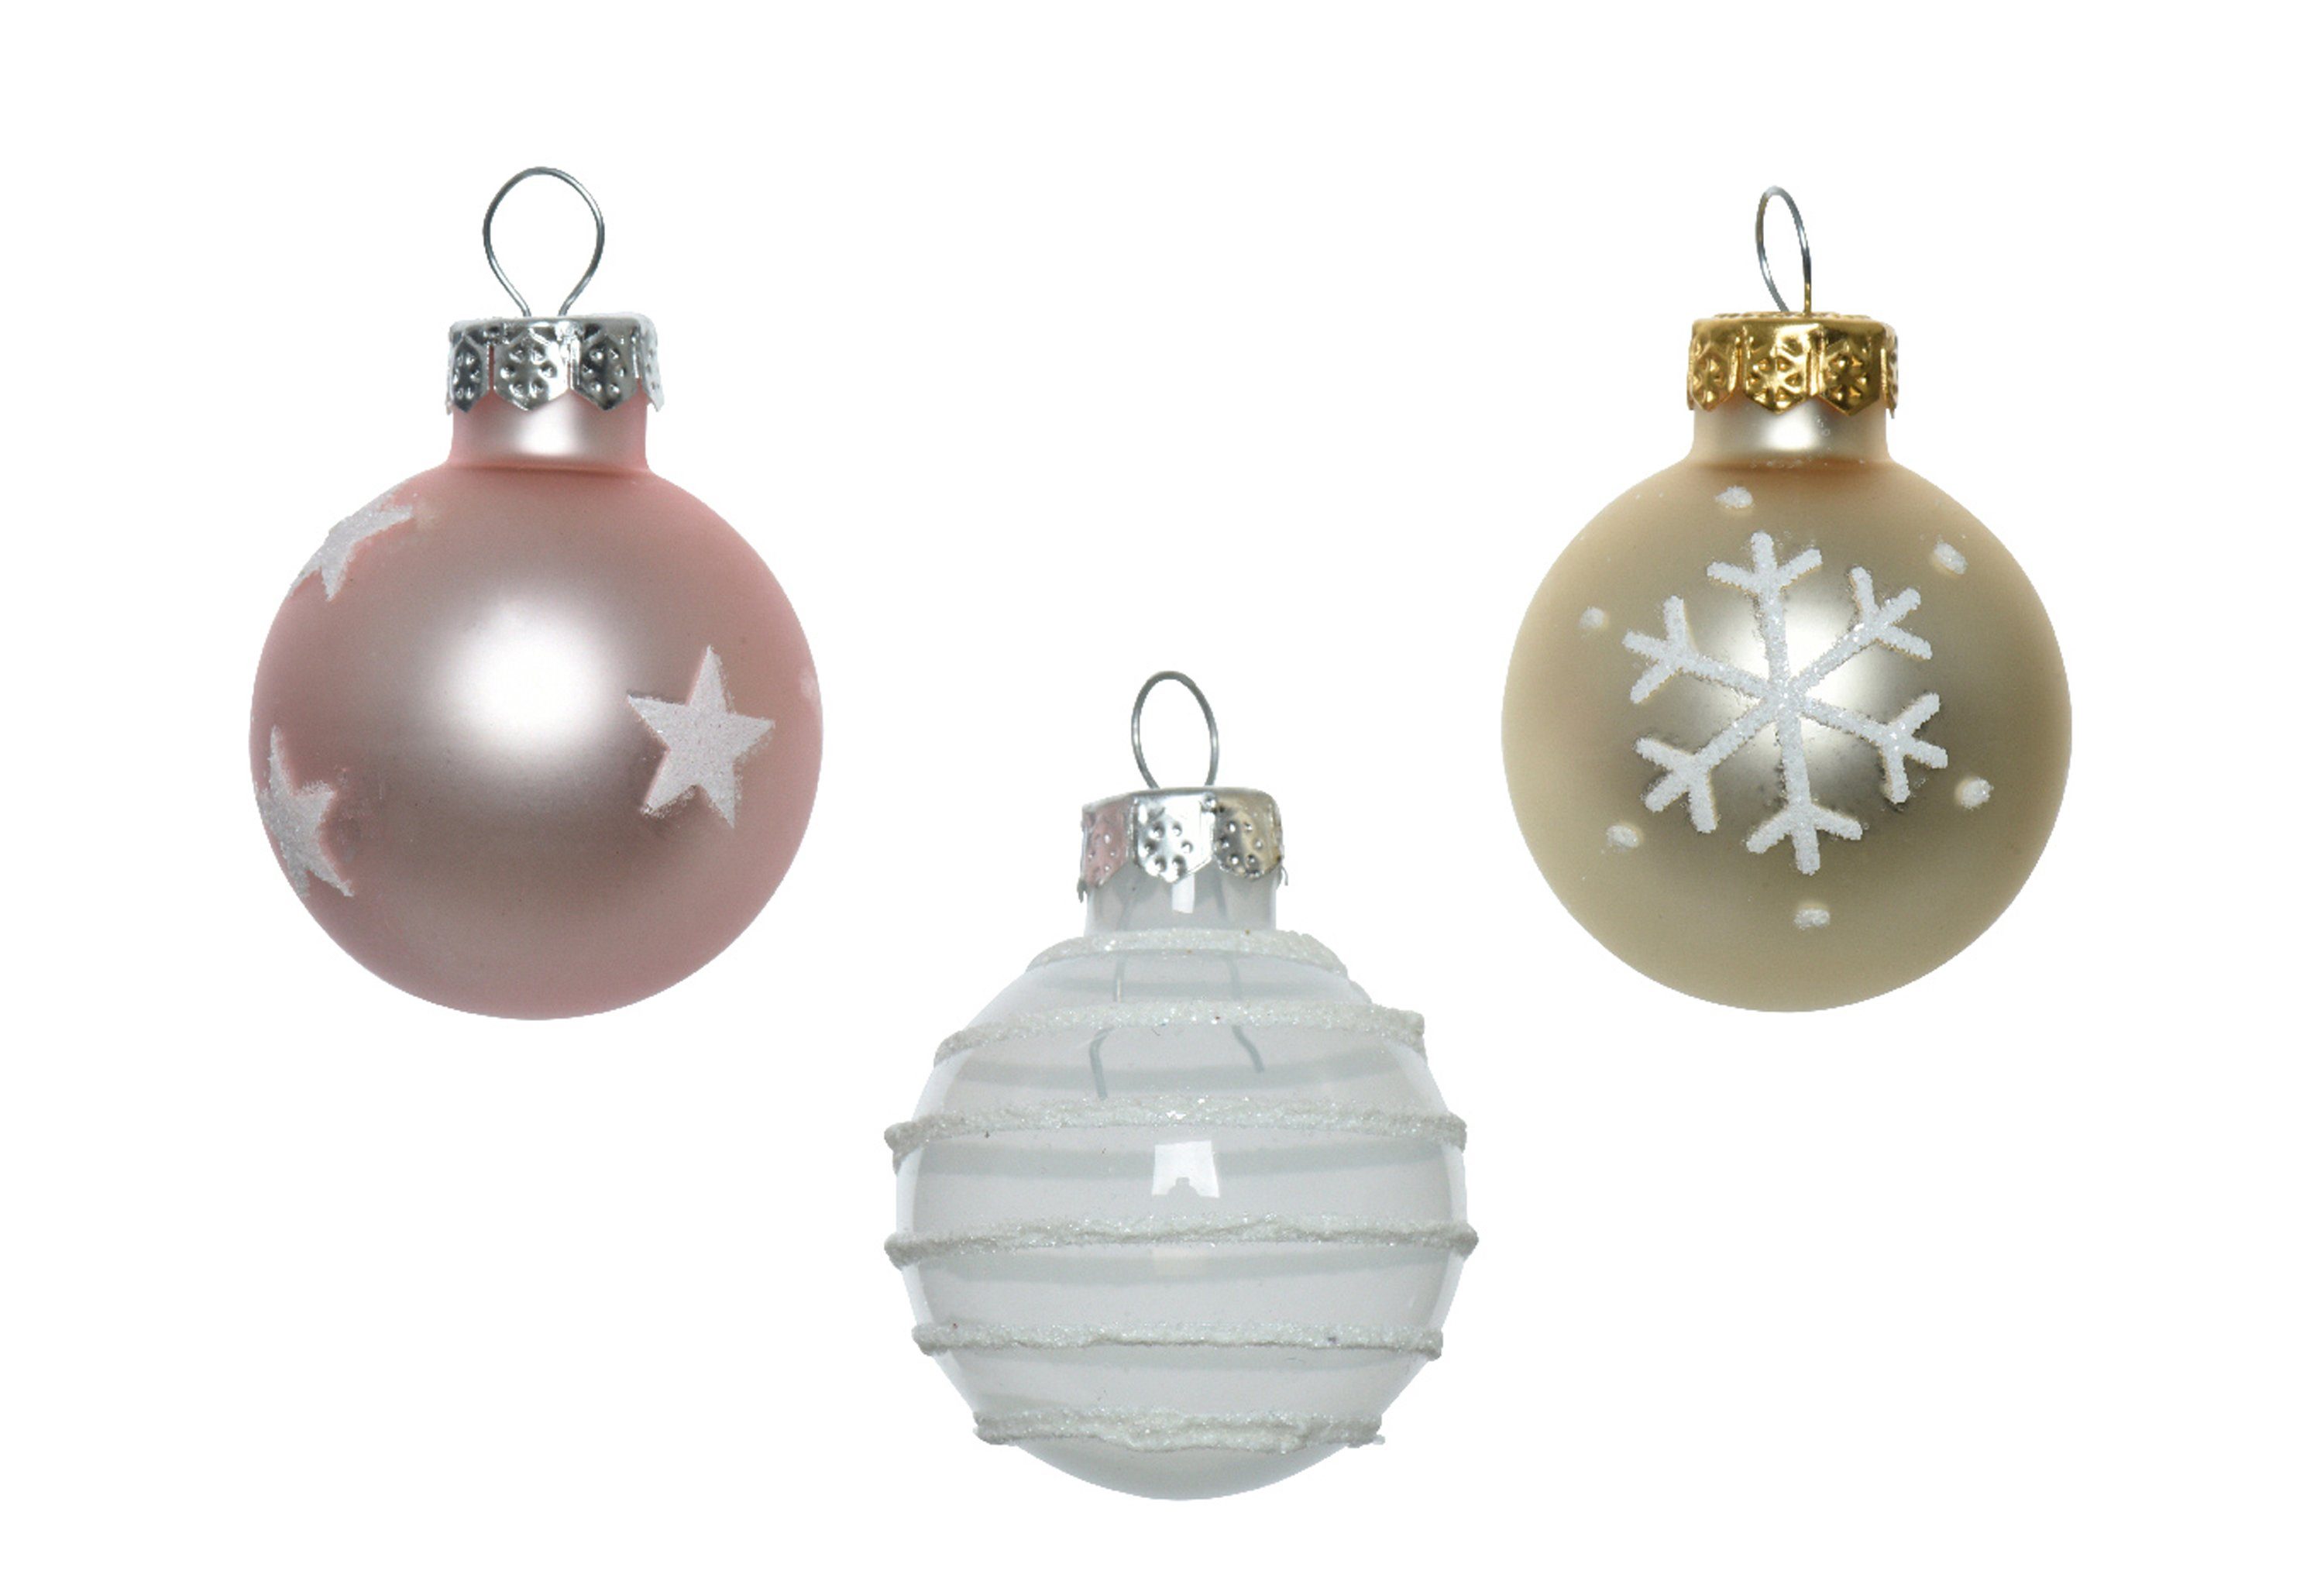 Decoris season decorations Weihnachtsbaumkugel, Weihnachtskugeln Glas mit Motiven 3cm rosa Mix, 9er Set